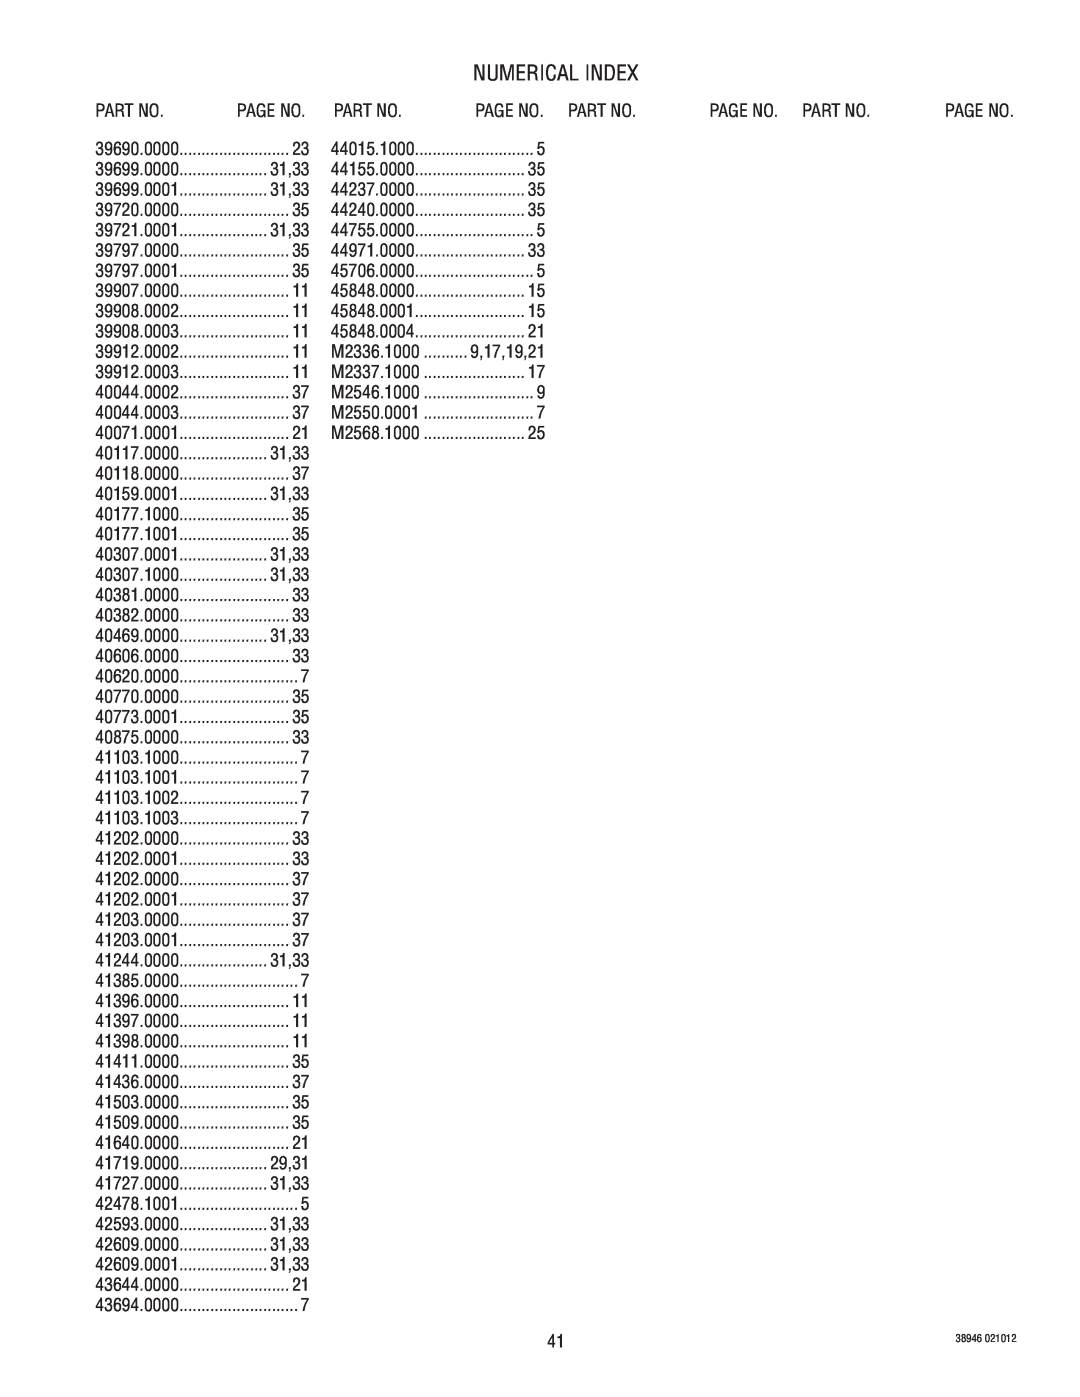 Bunn JDF-2S manual Numerical Index, Page No. Part No 